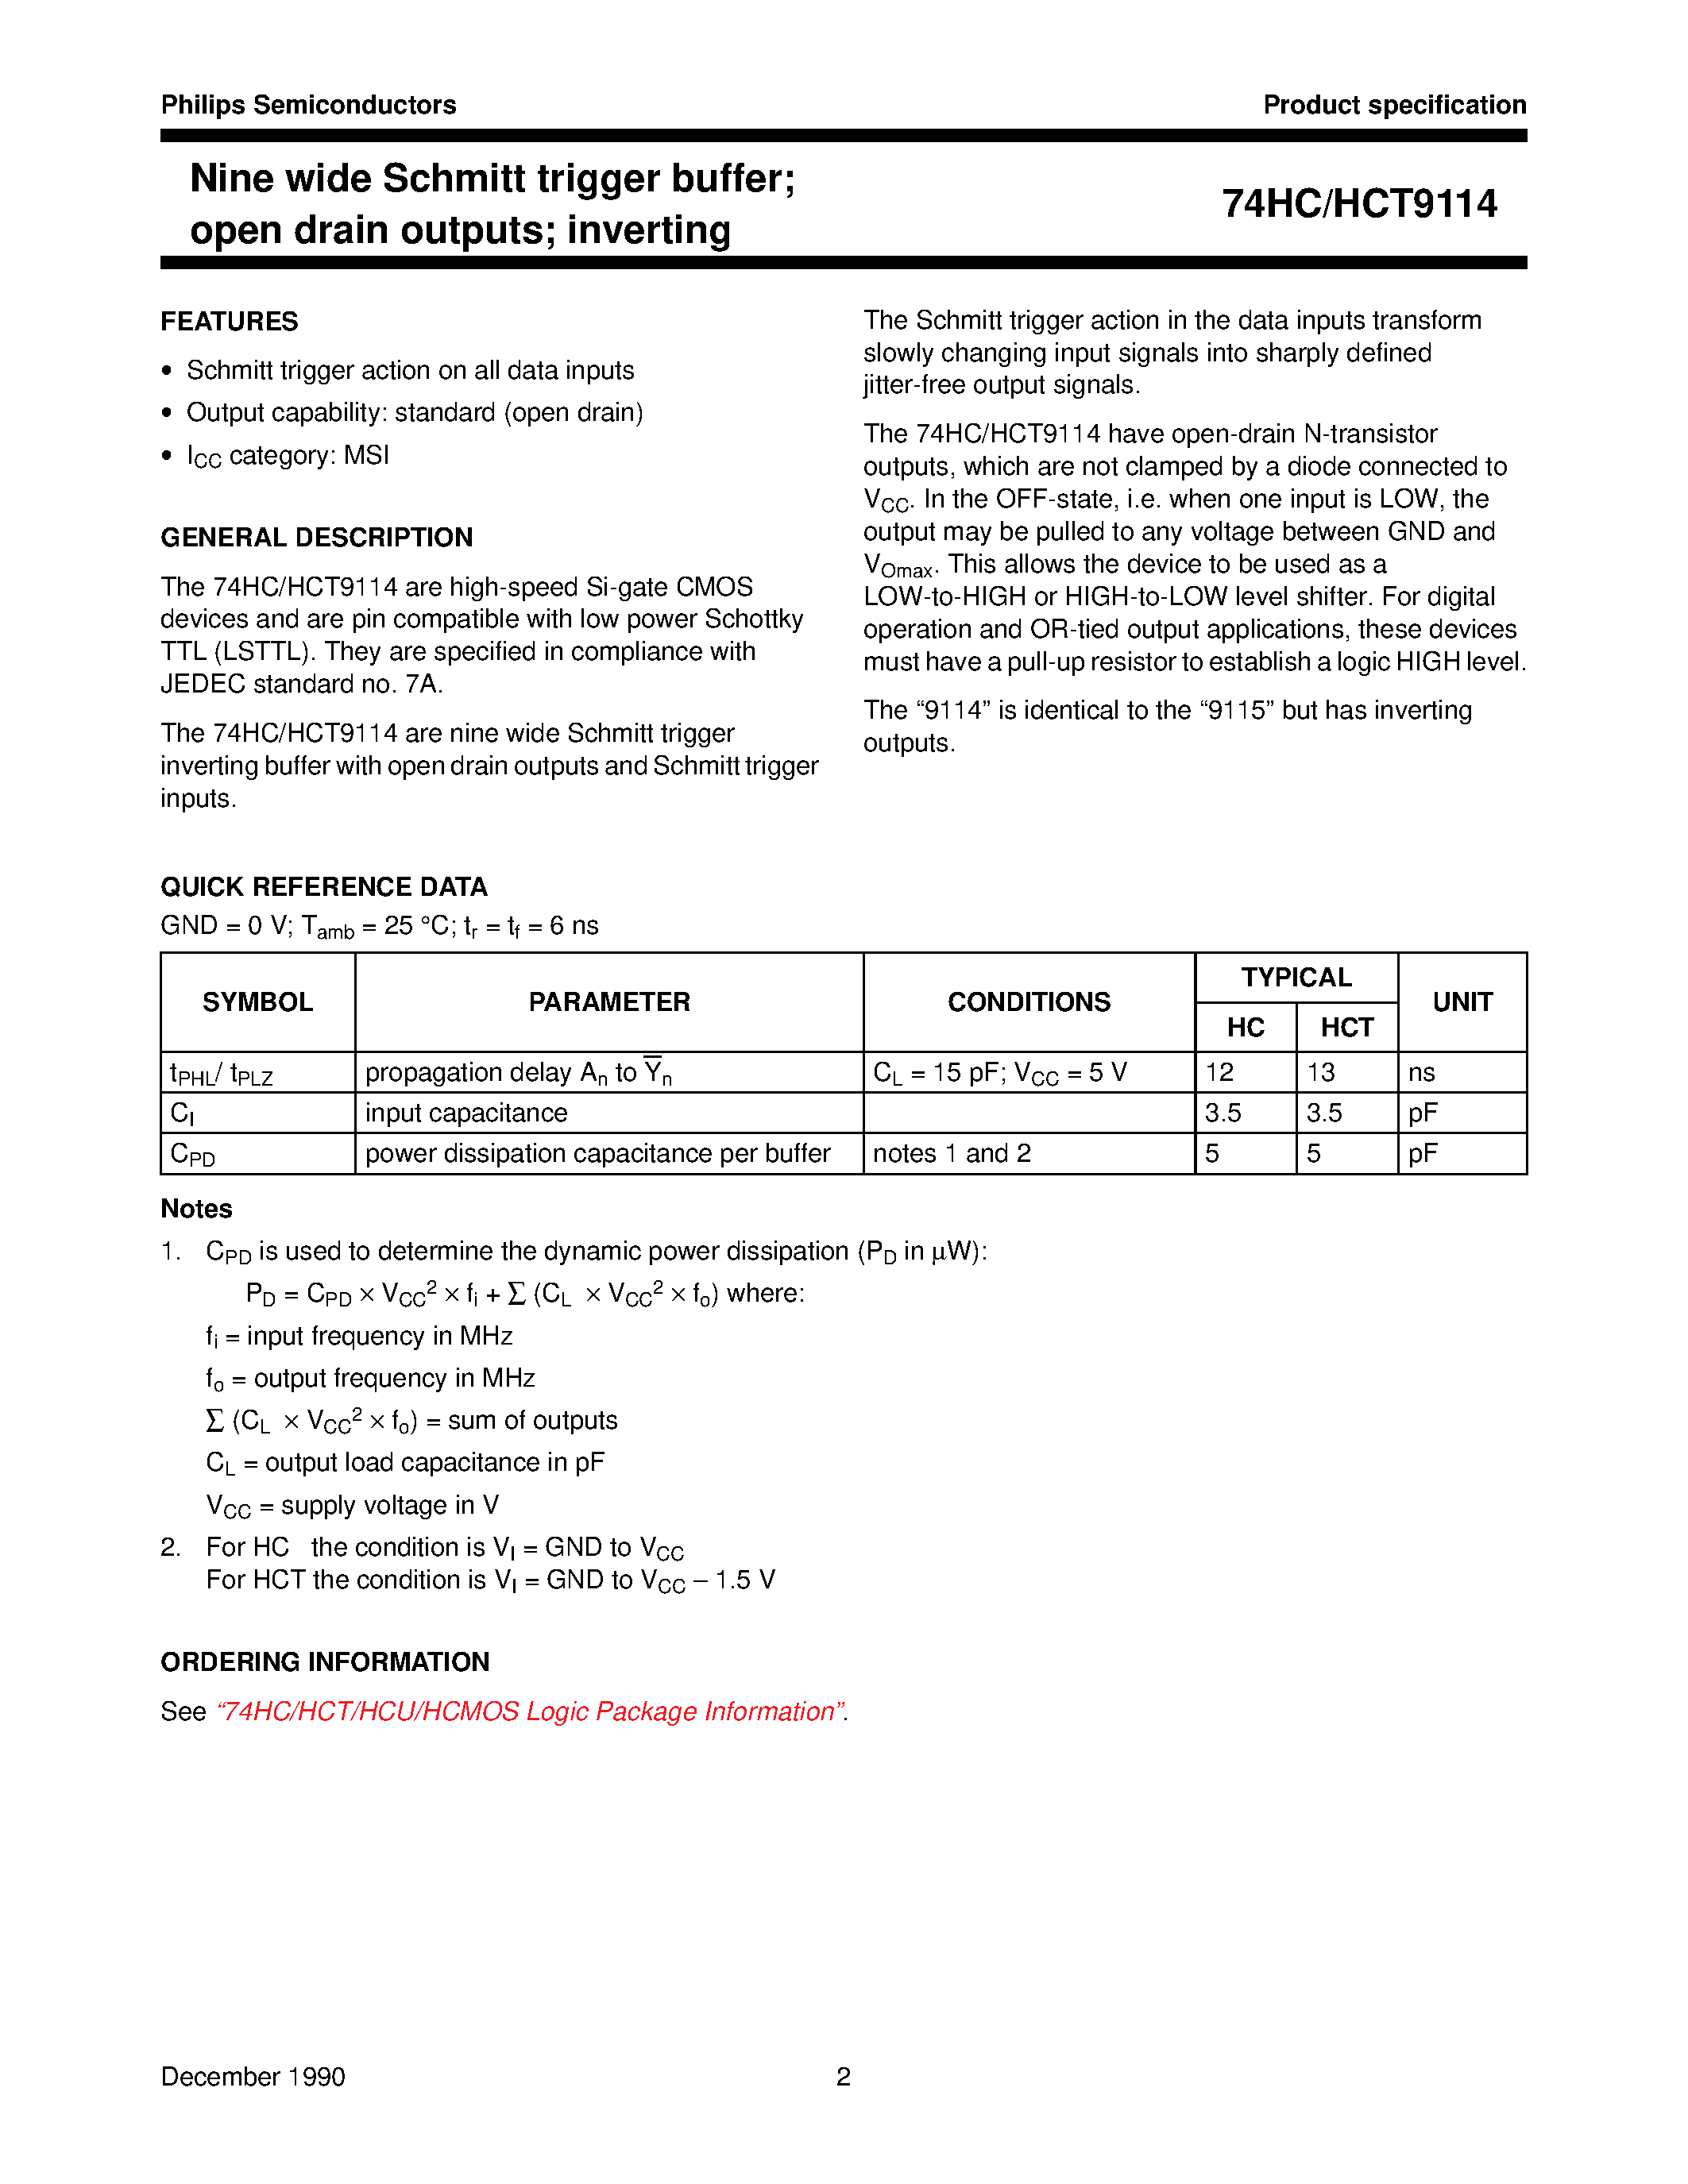 Datasheet 74HCT9114 - Nine wide Schmitt trigger buffer; open drain outputs; inverting page 2